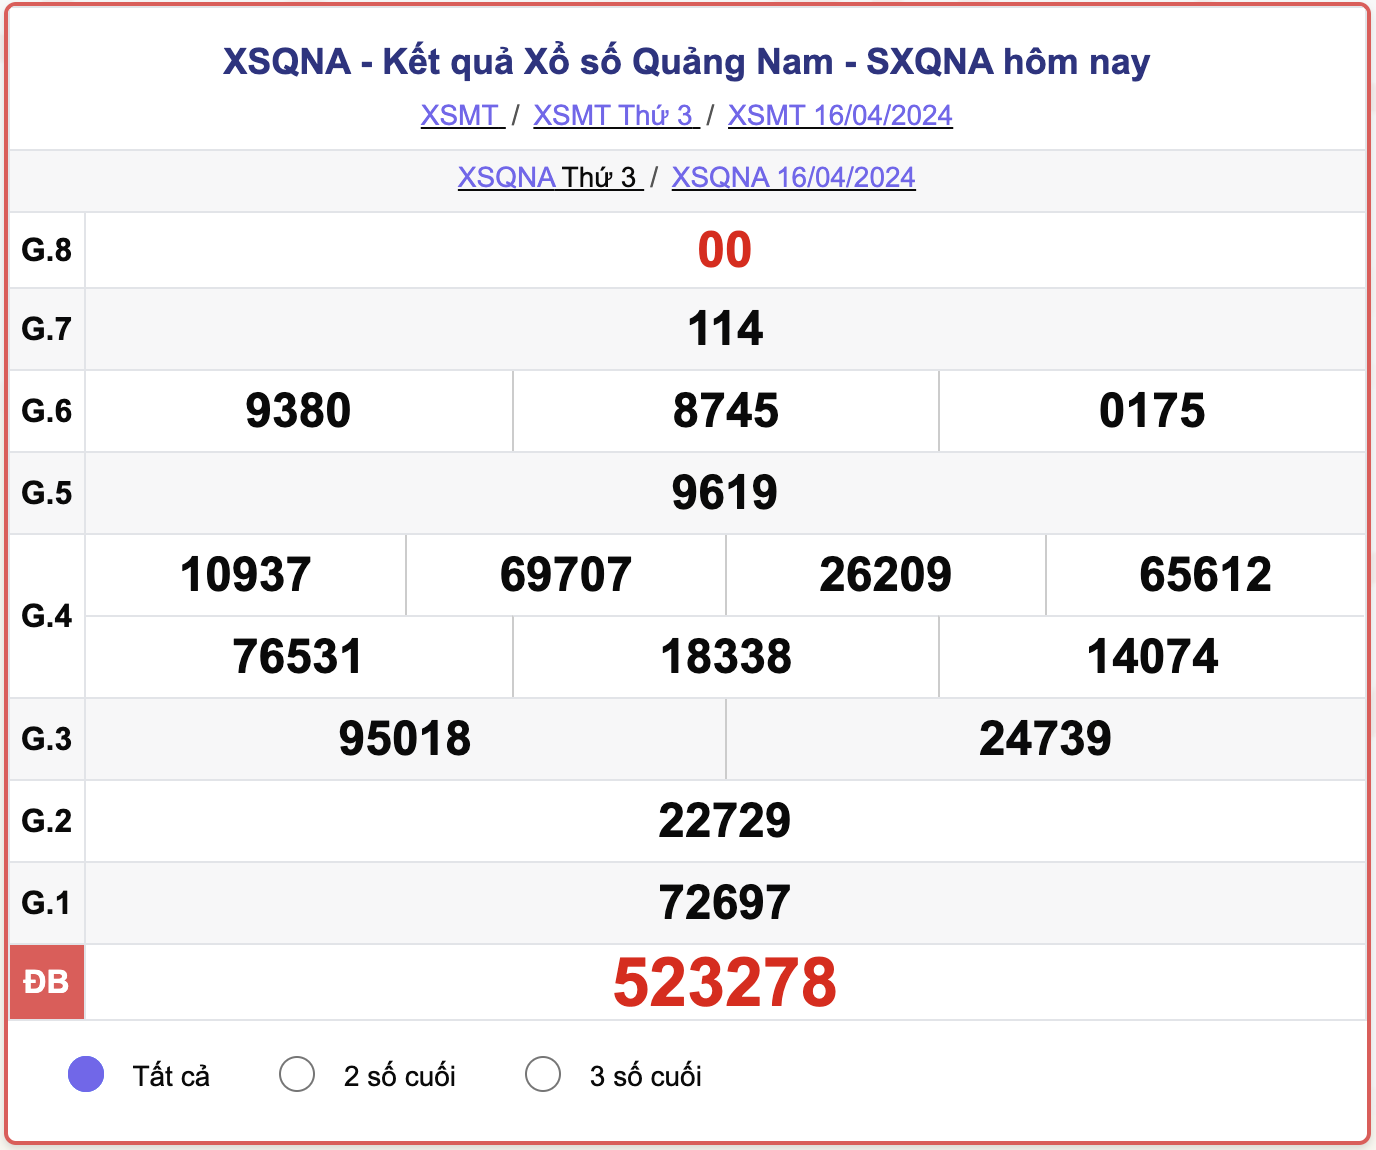 XSQNA thứ 3, kết quả xổ số Quảng Nam ngày 16/4/2024.